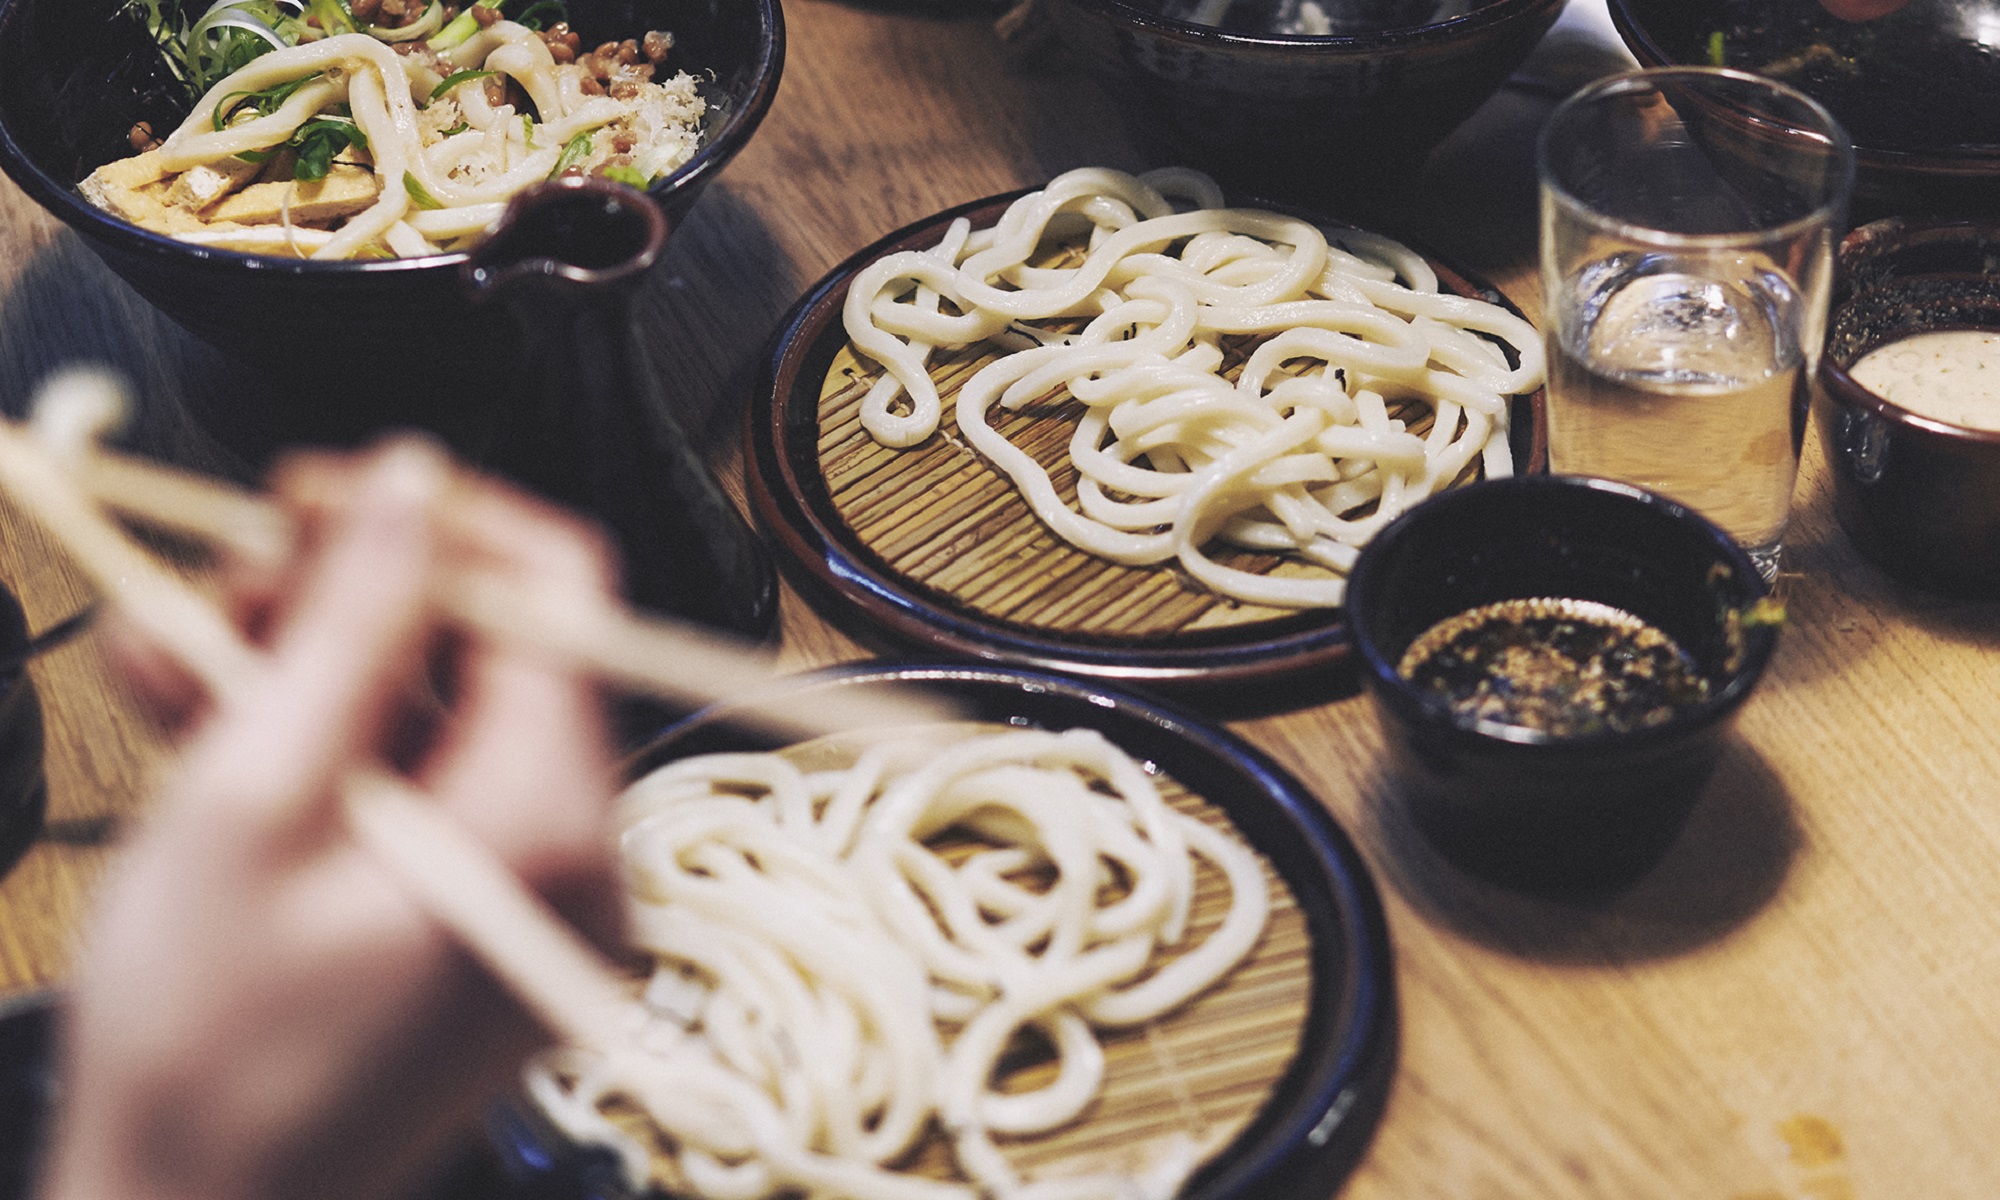 Udon noodles in bowls.